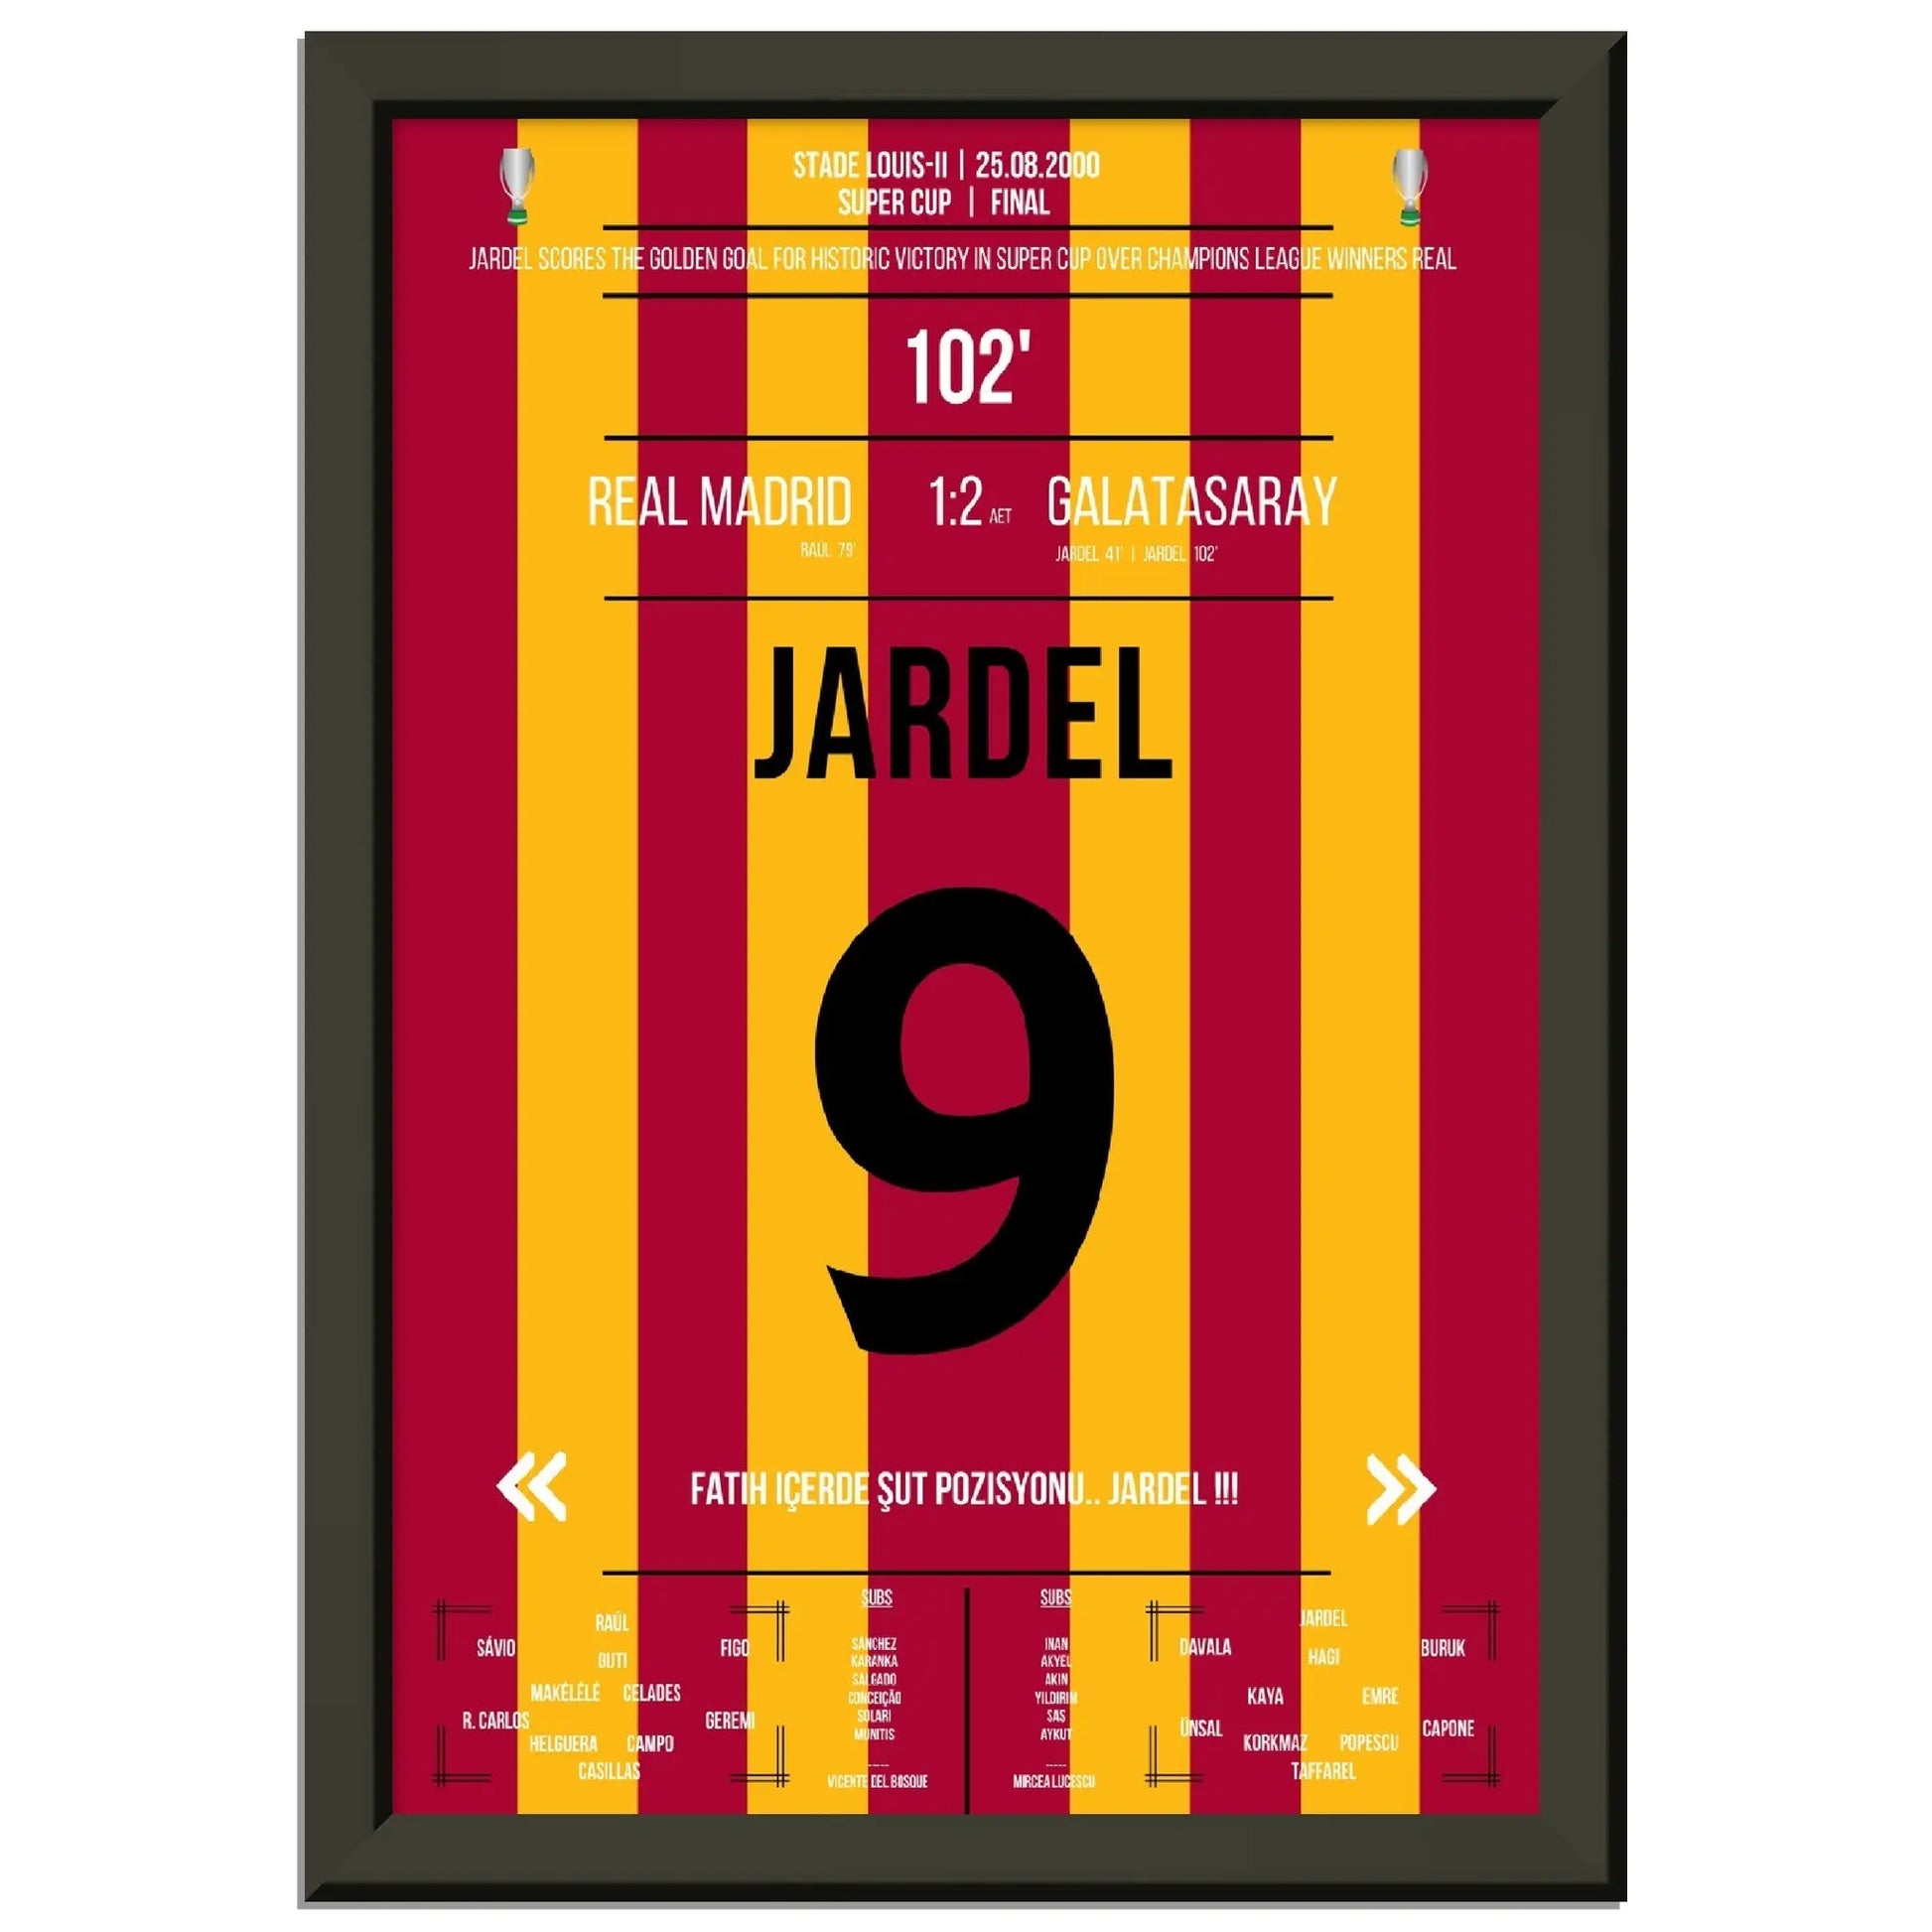 Mario Jardel Golden Goal gegen Real im Super Cup Finale 2000 